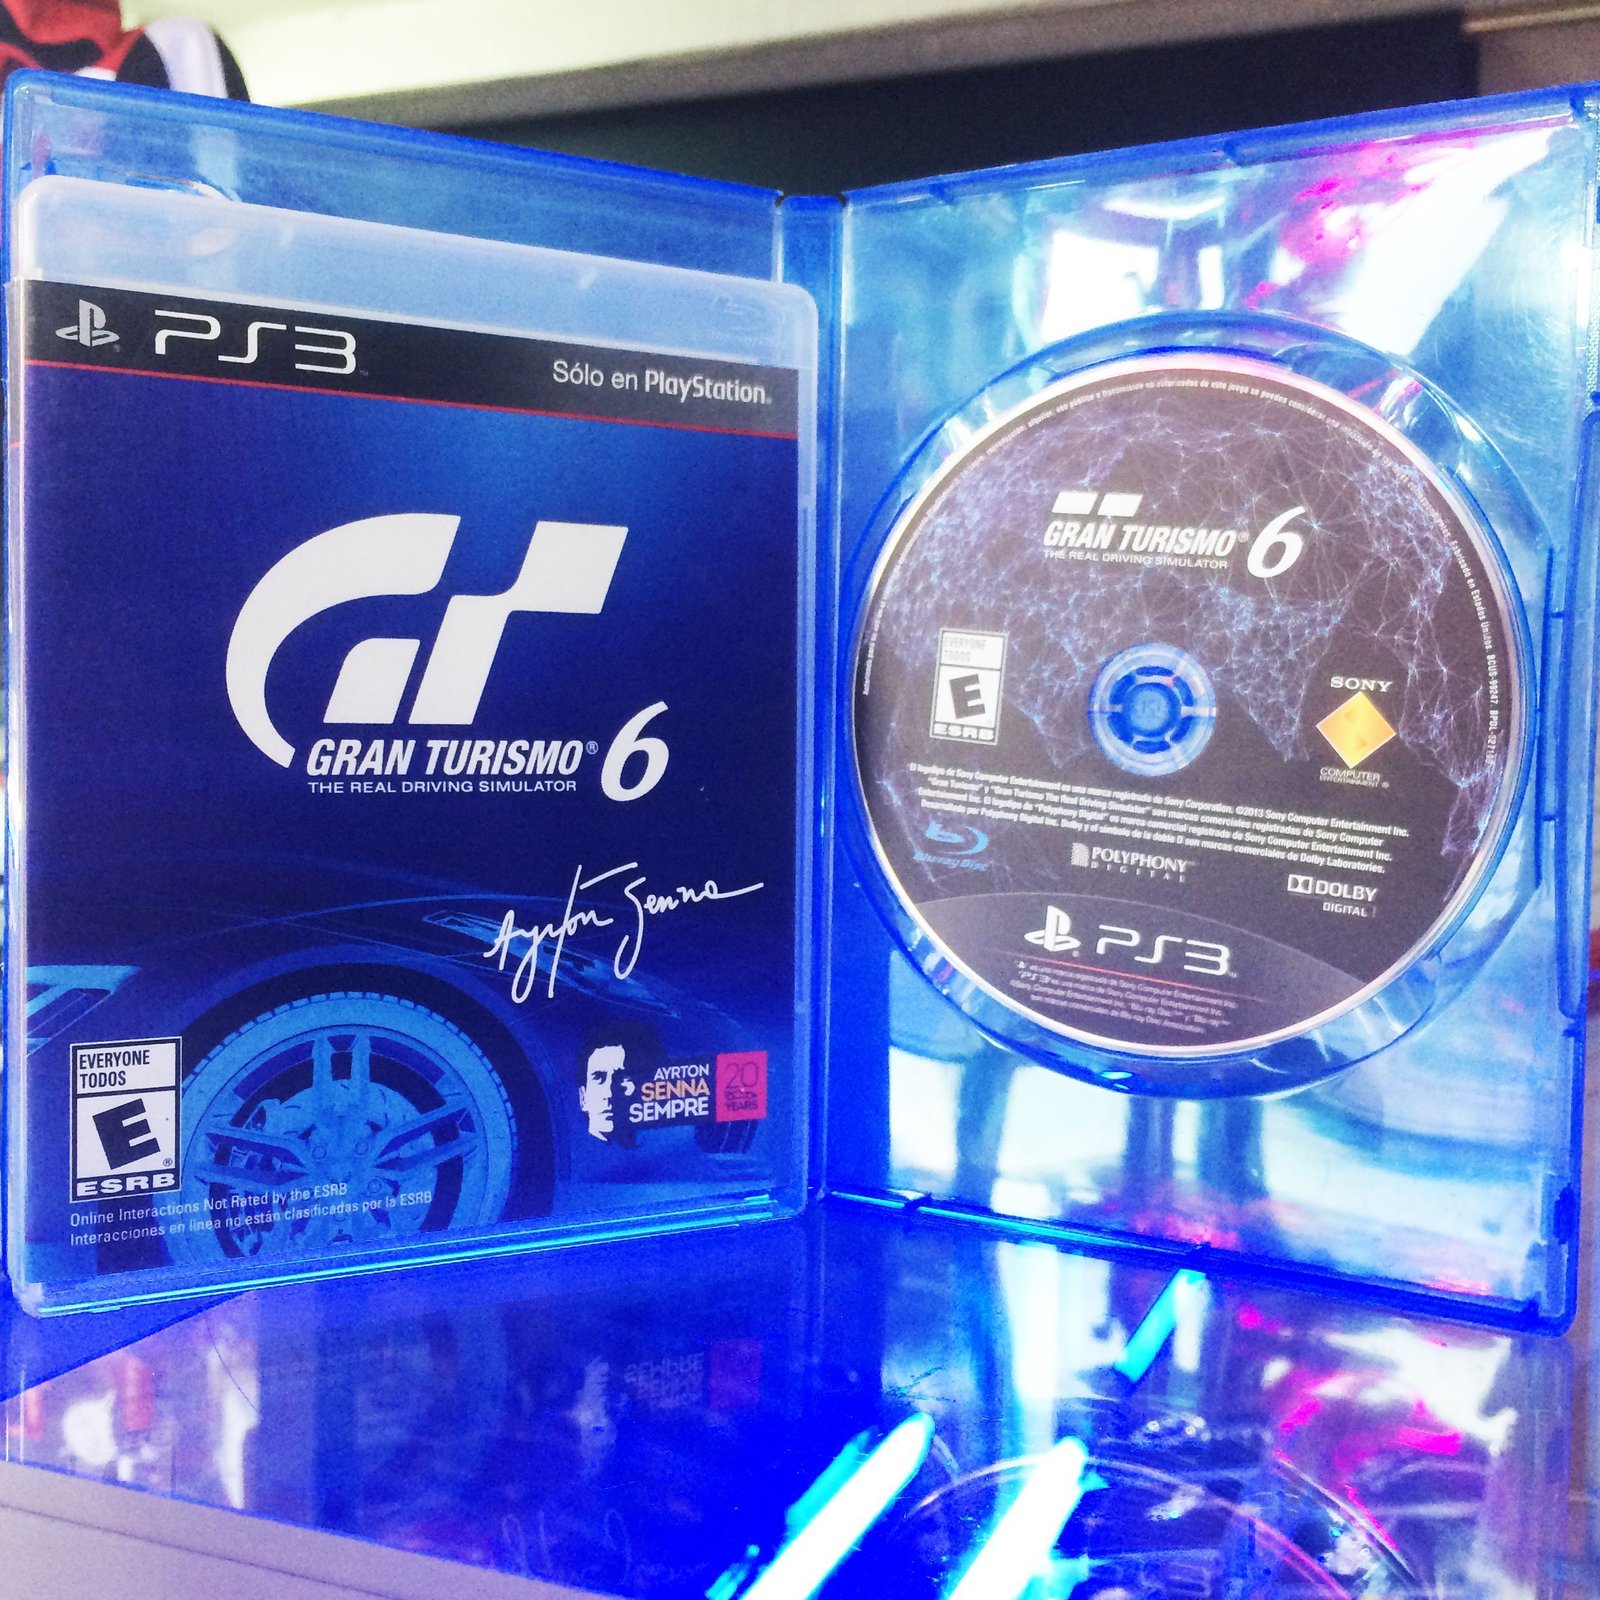 Videojuegos para consola PS3 Gran Turismo 6 Ecuador Comprar Venden, Bonita Apariencia ideal para los fans, practica, Hermoso material de papel Color como en la imagen Estado usado